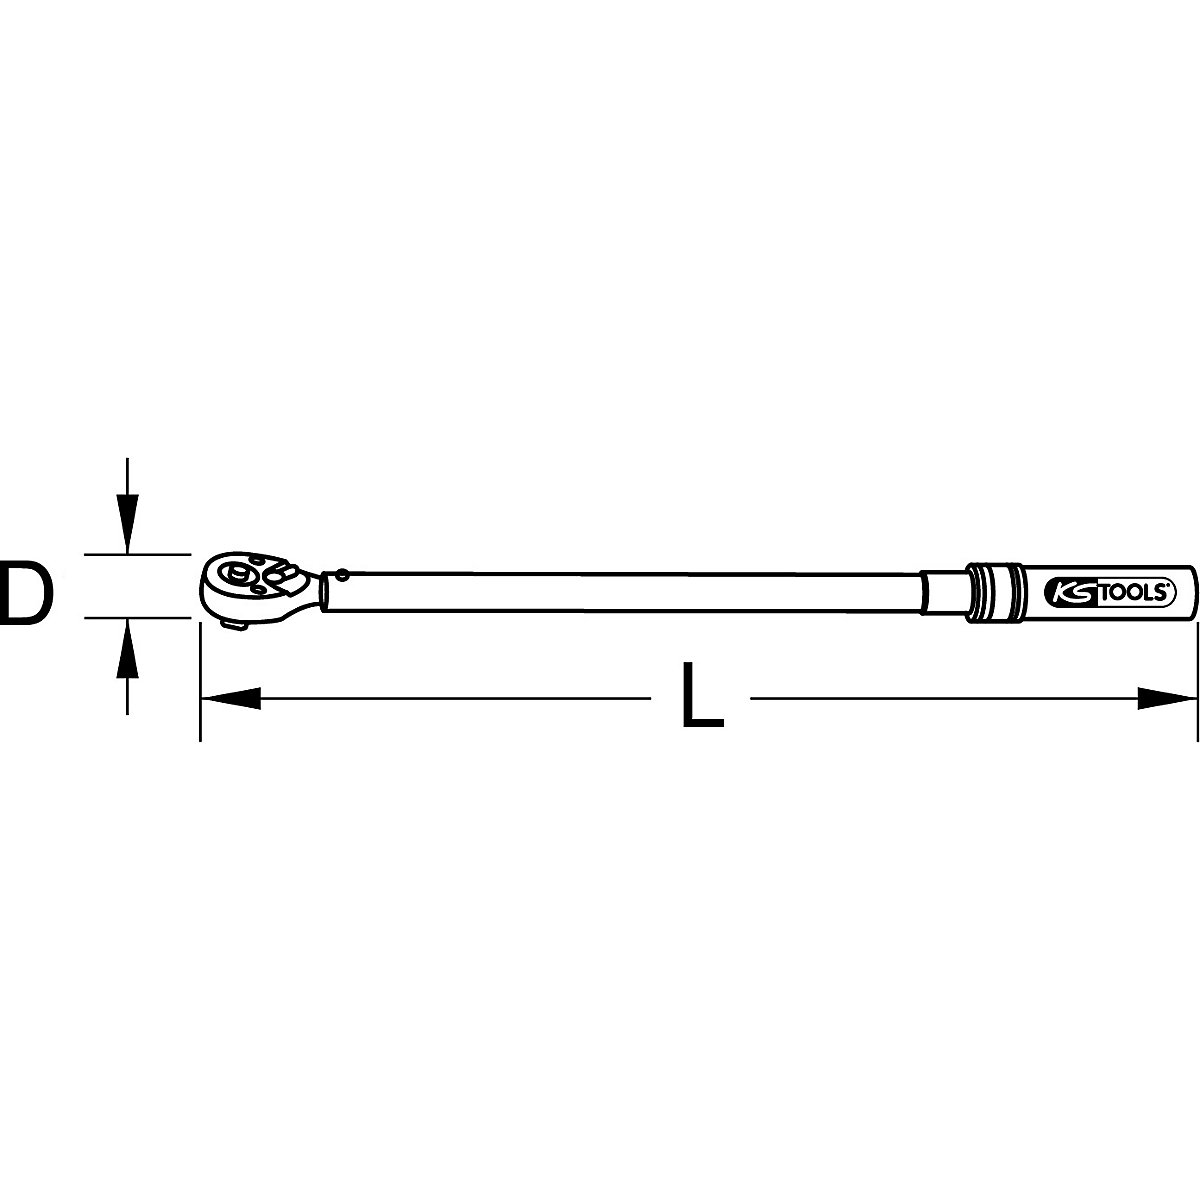 Cheie dinamometrică industrială, cu schimbare de direcție – KS Tools (Imagine produs 7)-6